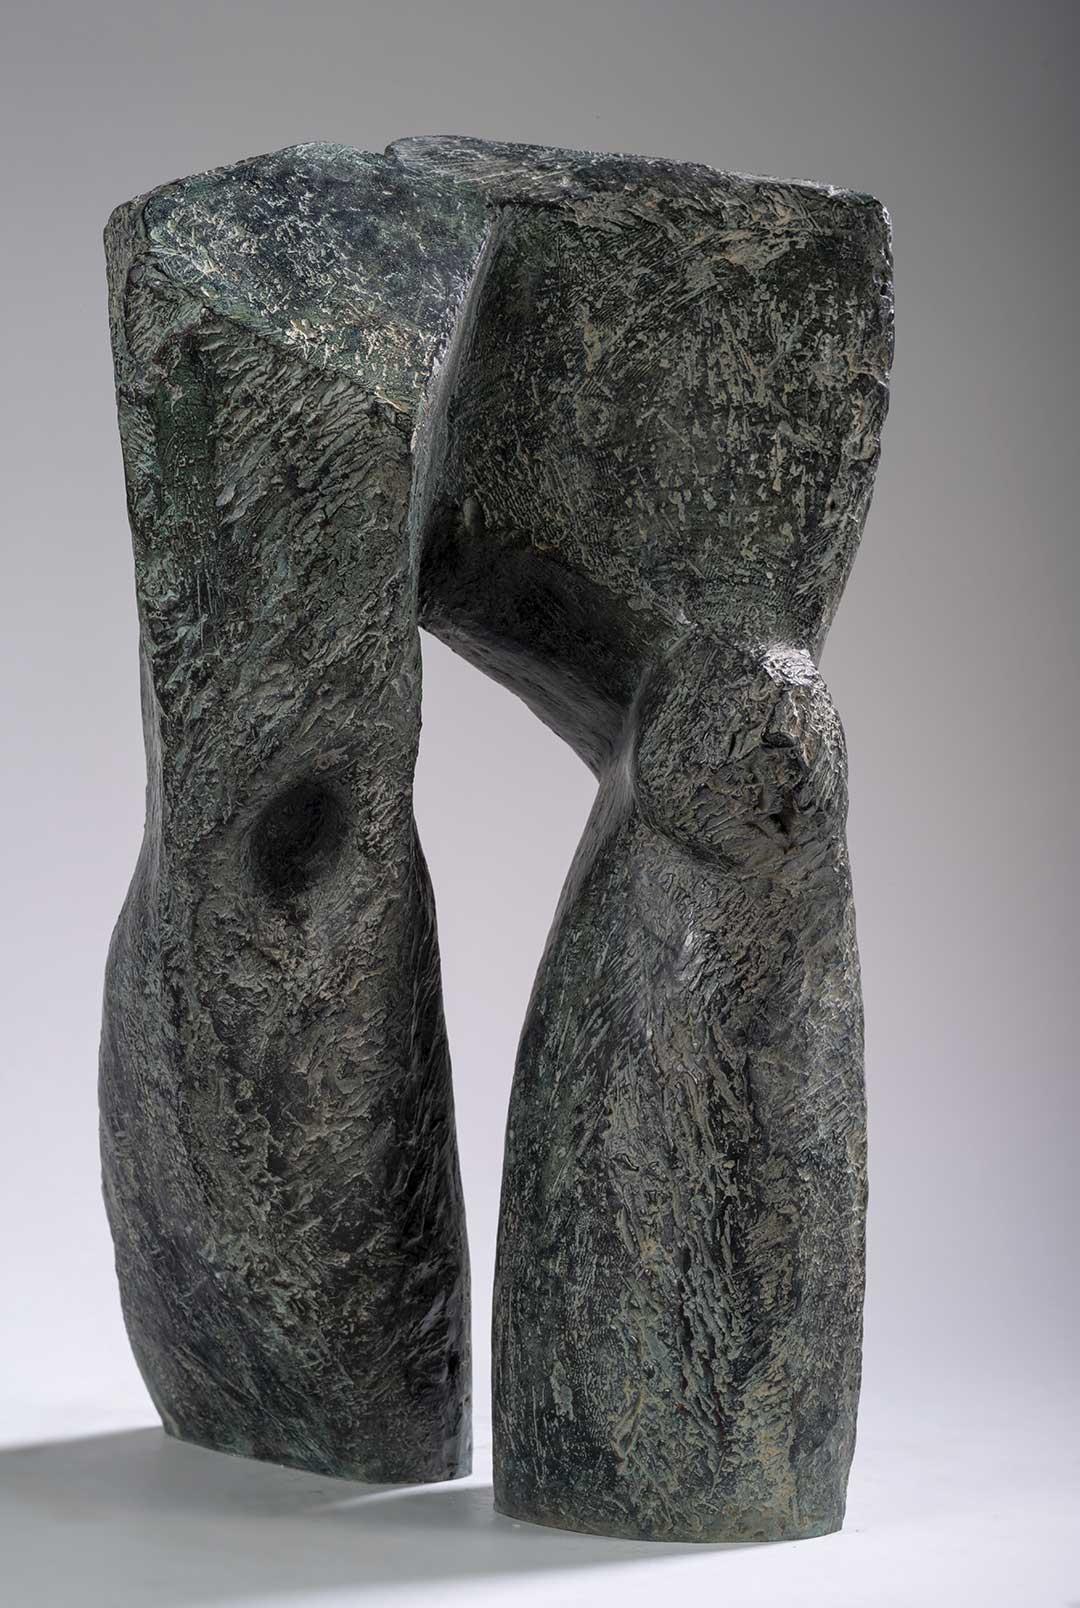 The Passage ist eine Bronzeskulptur der französischen zeitgenössischen Künstlerin Martine Demal mit den Maßen 43 × 27 × 24 cm (16,9 × 10,6 × 9,4 in). 
Die Skulptur ist signiert und nummeriert, gehört zu einer limitierten Auflage von 8 Exemplaren + 4